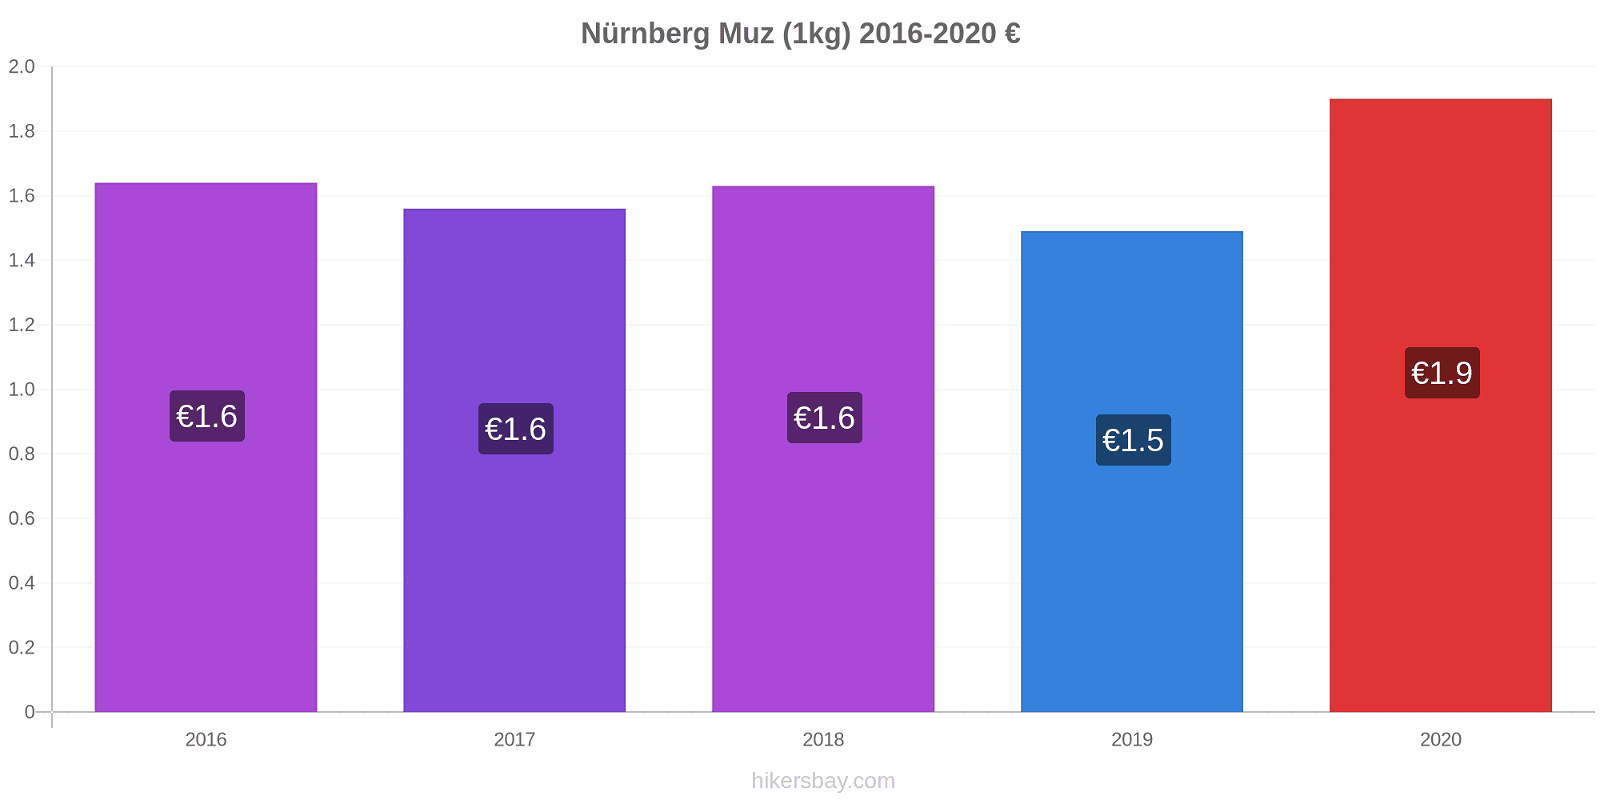 Nürnberg fiyat değişiklikleri Muz (1kg) hikersbay.com